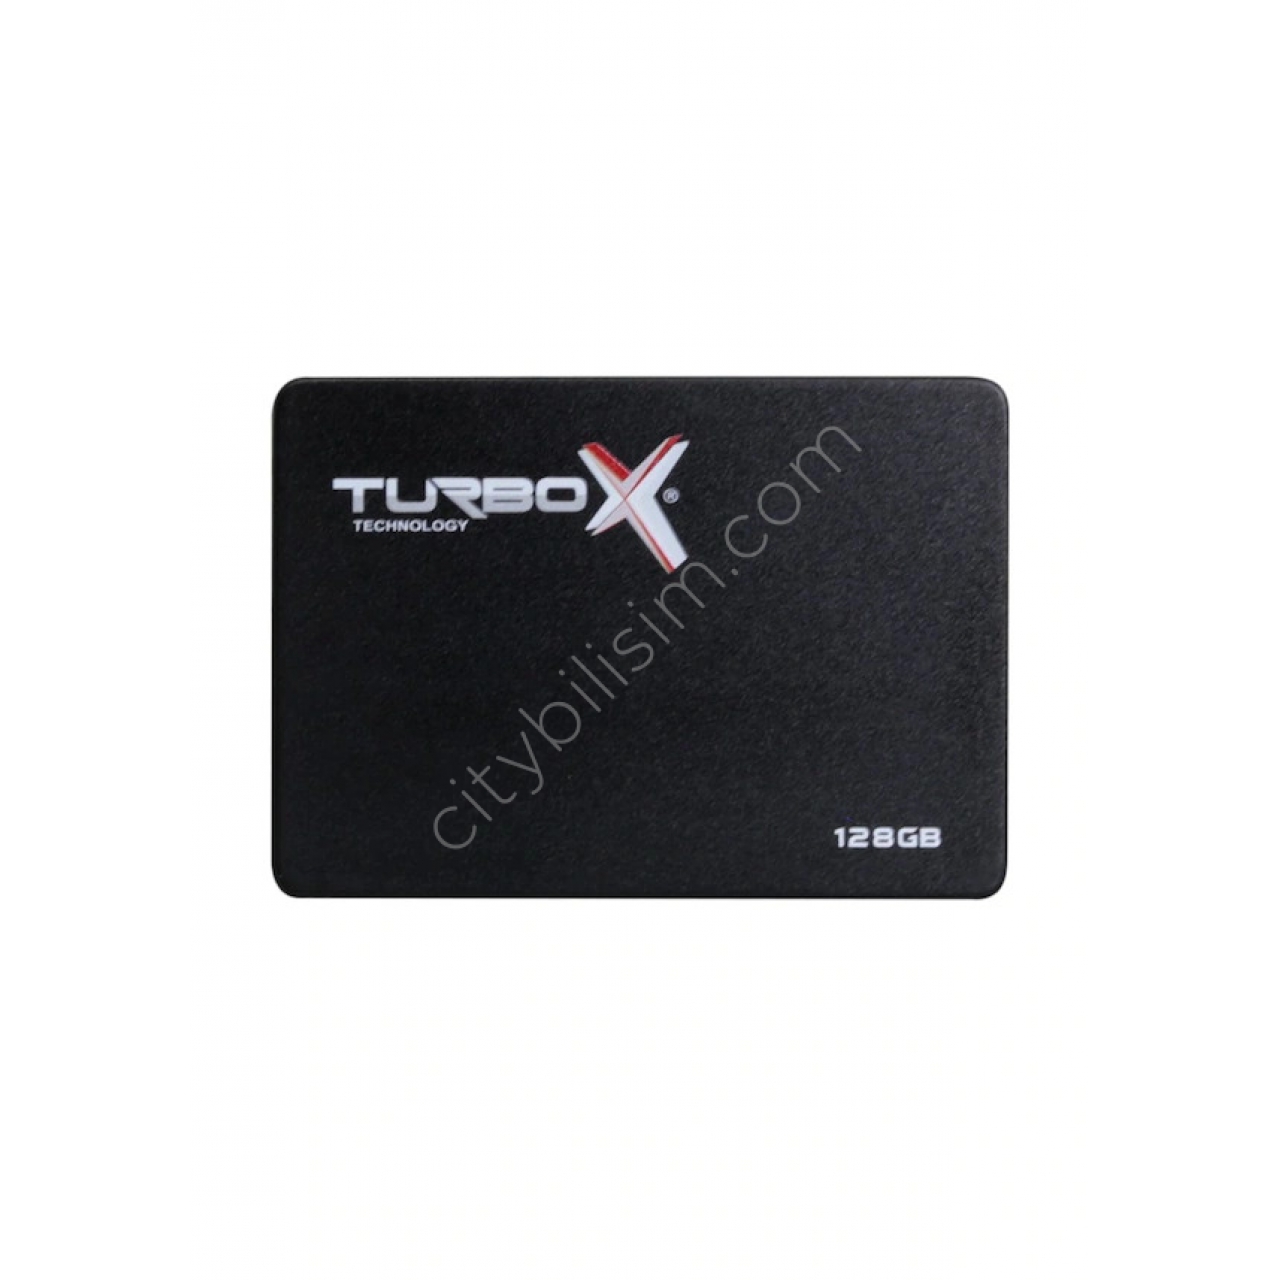 Turbox RaceTrap R KTA320 2.5" 128 GB 520/400 SATA 3 SSD